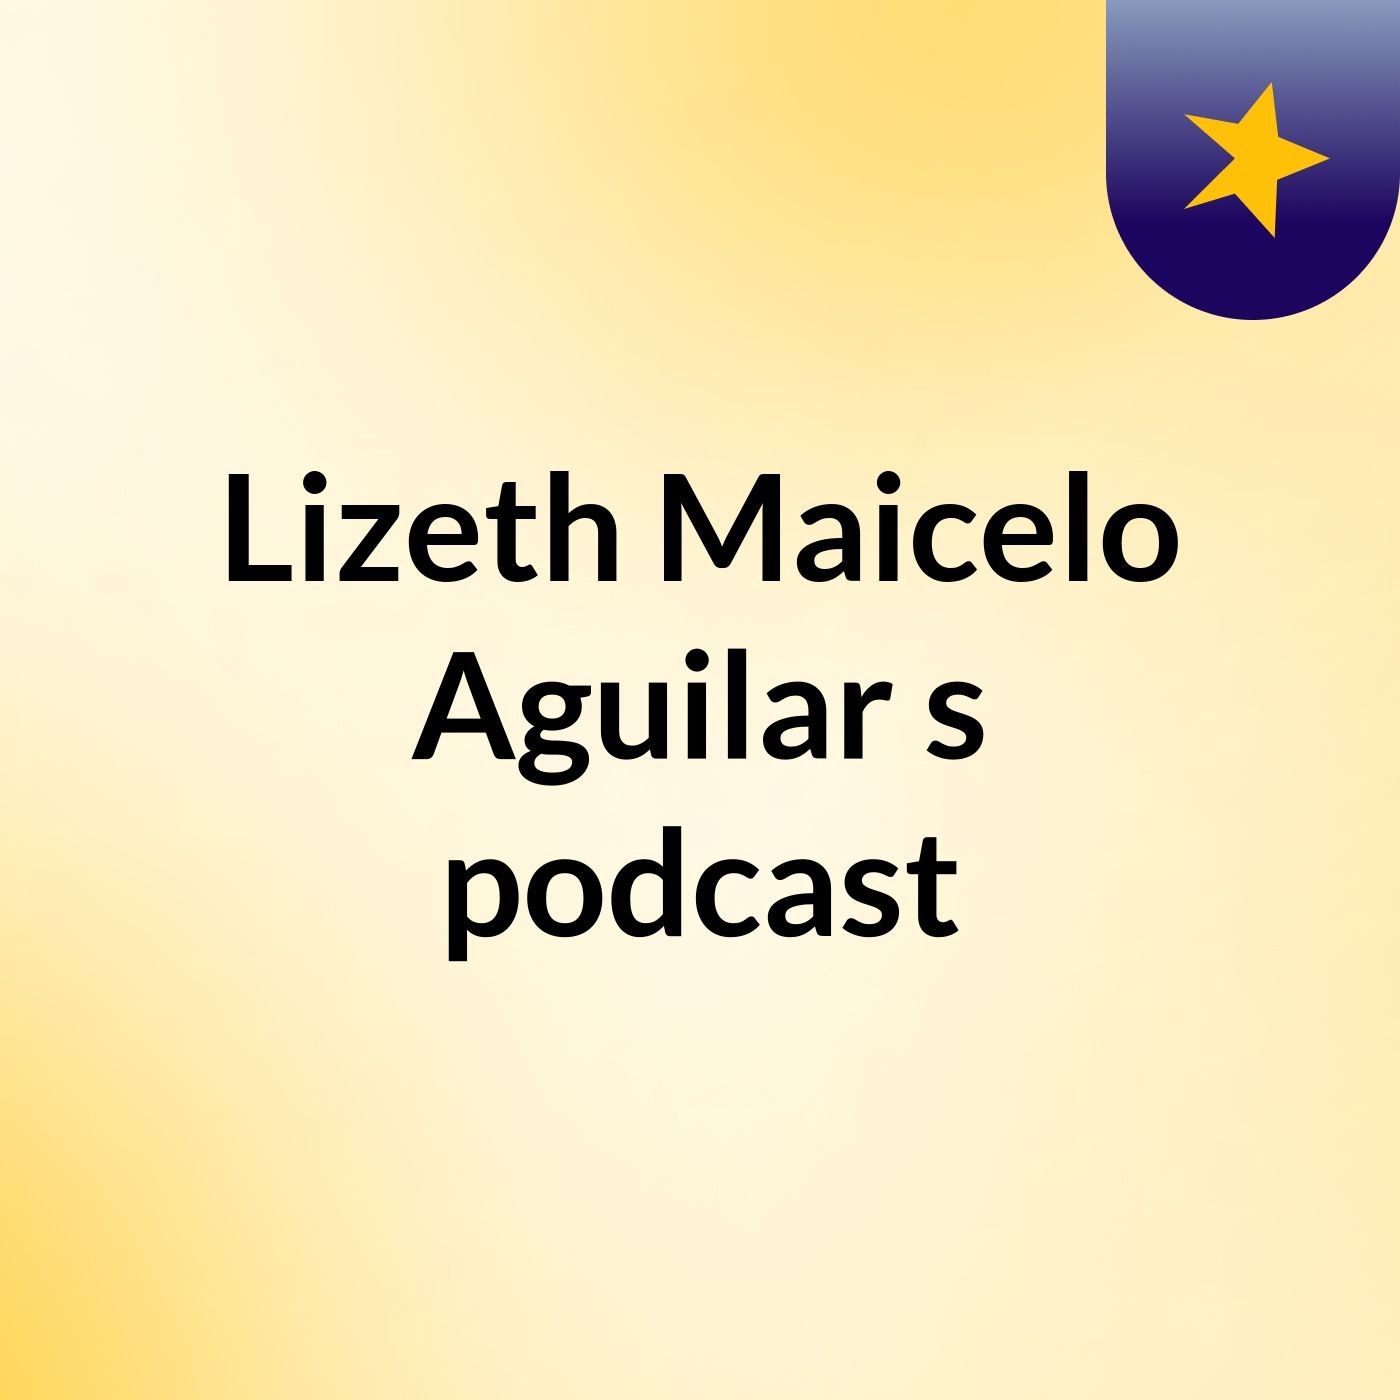 Lizeth Maicelo Aguilar's podcast